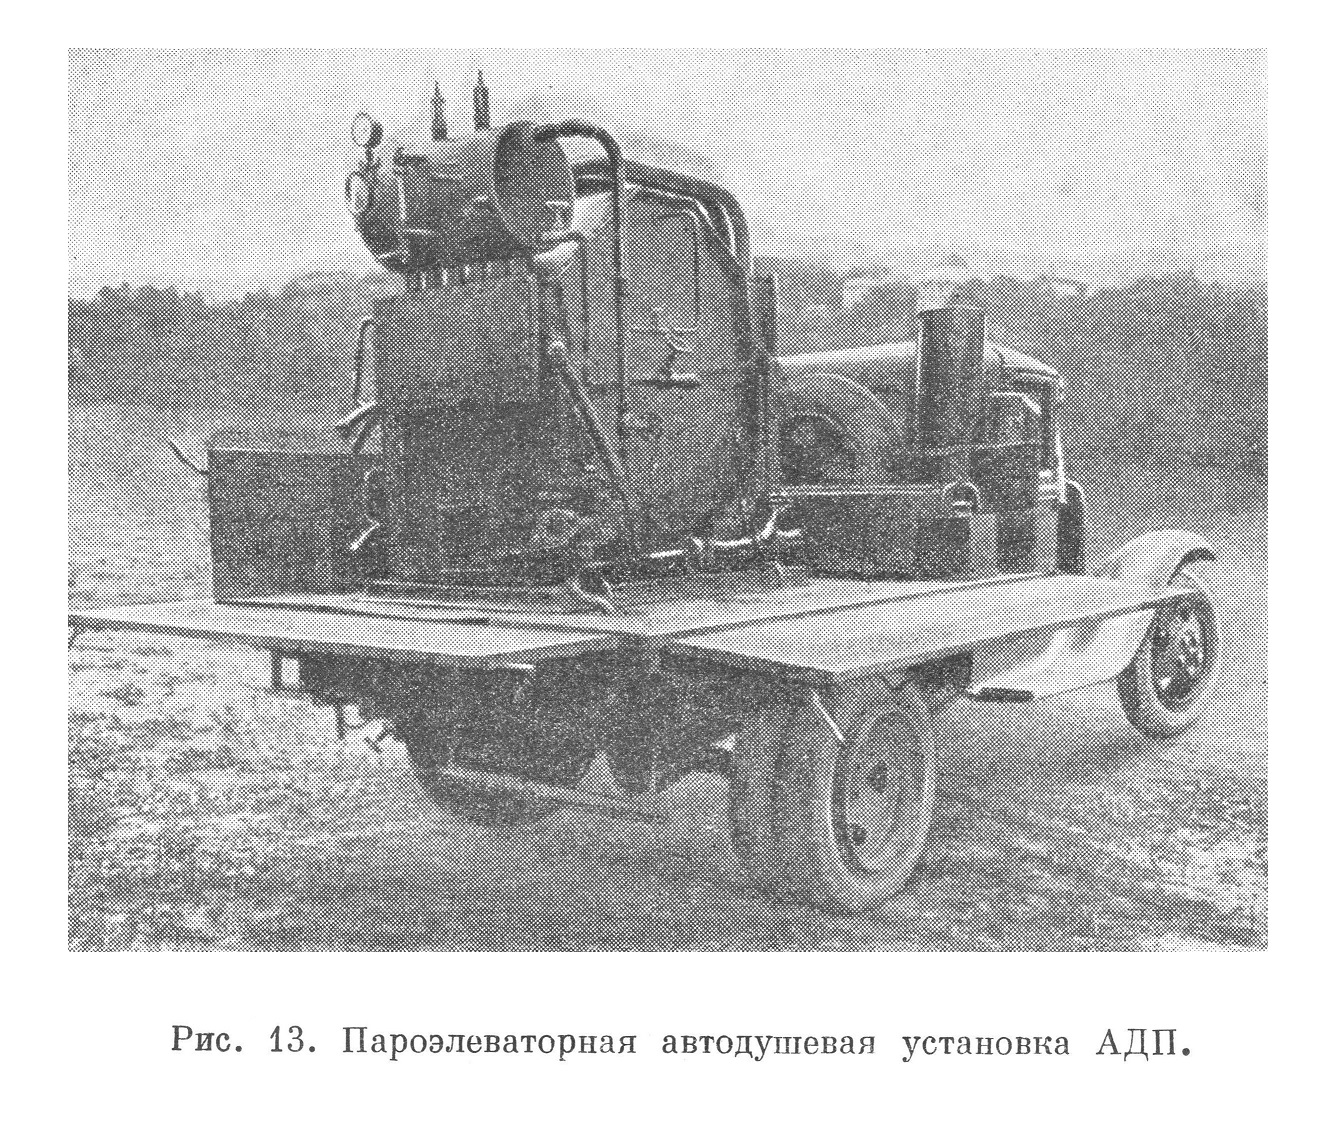 Пароэлеваторная автодушевая установка АДП.